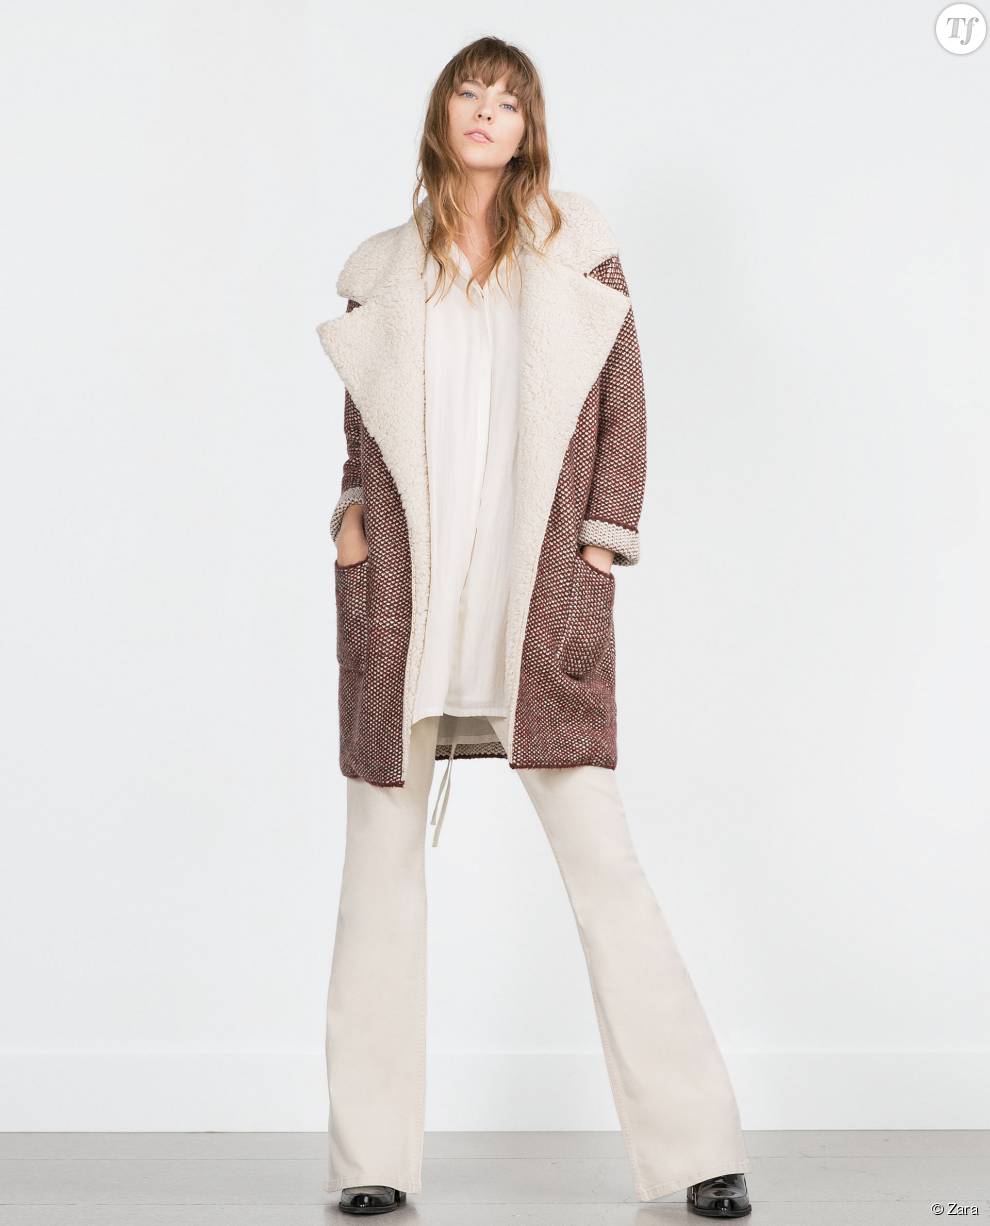  Manteau à peau lainé en rabat Zara  59,95 euros